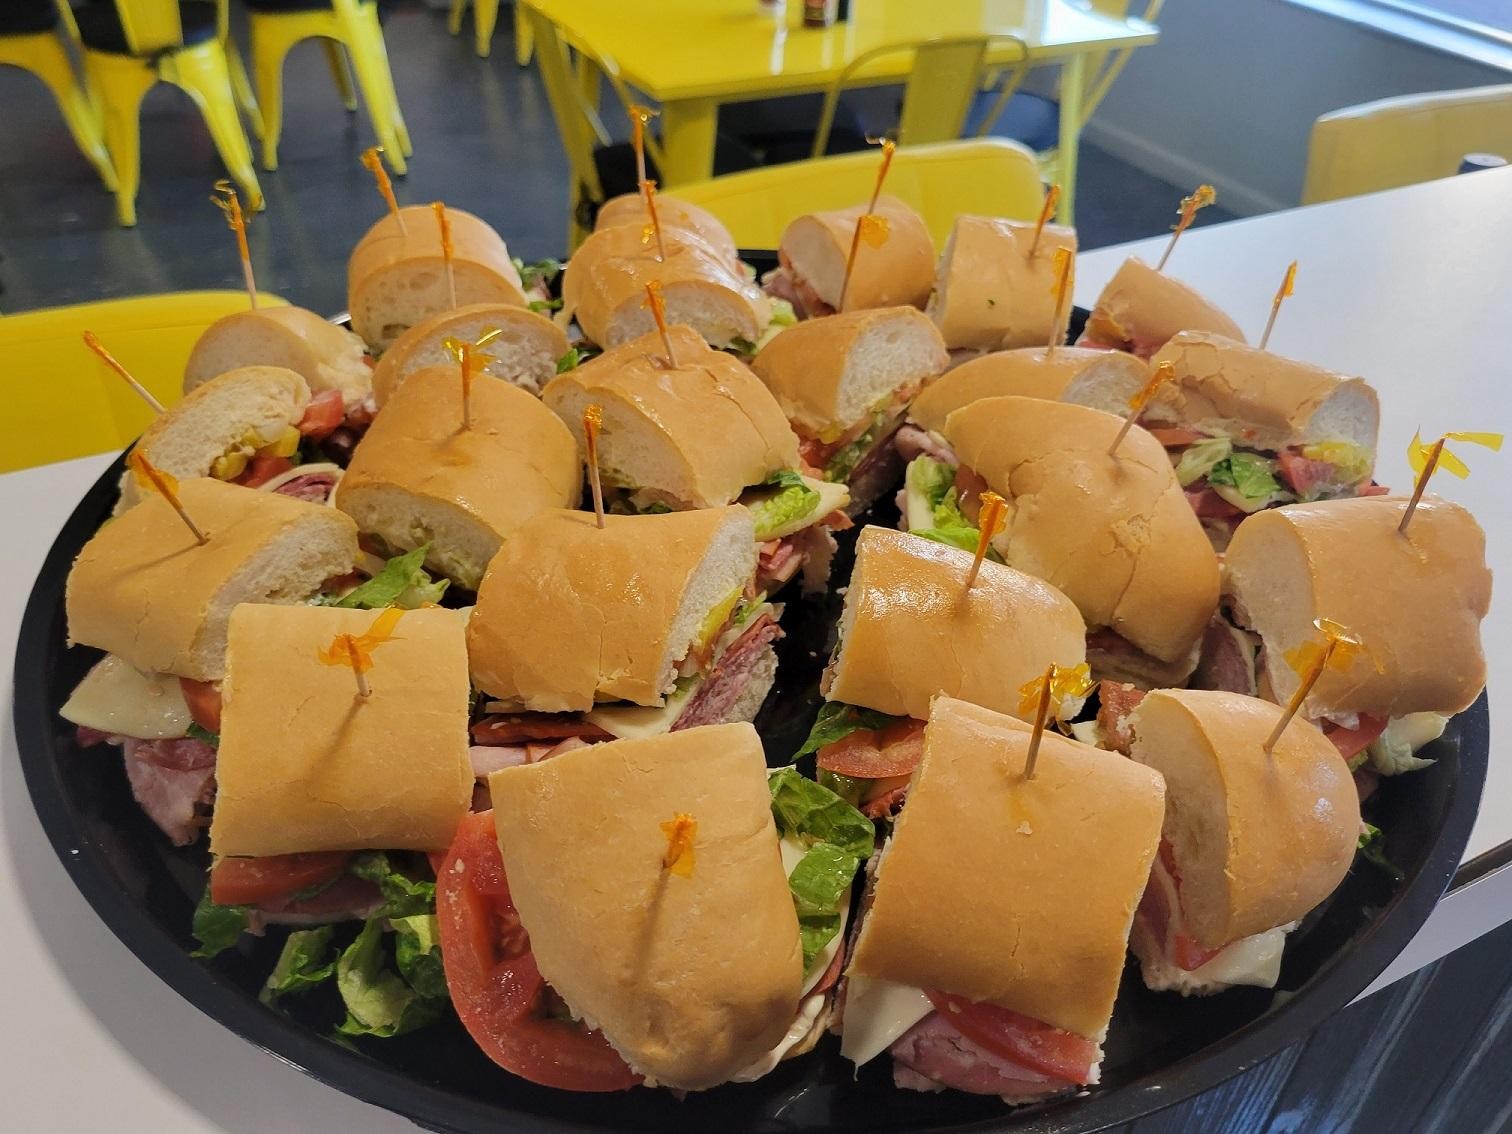 Sandwich Platter - Assorted